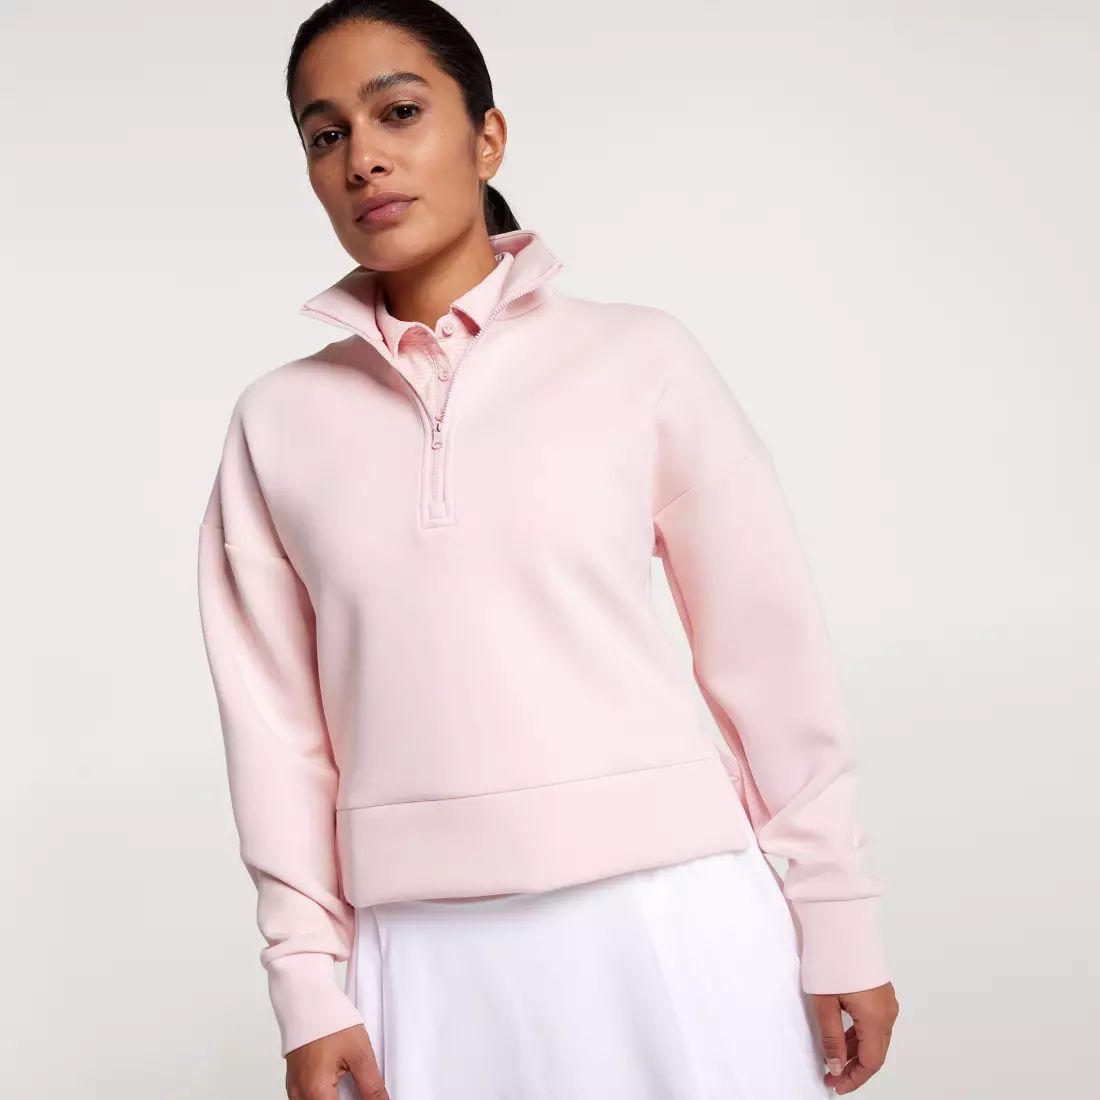 CALIA Women's Soft Scuba 1/4 Zip Golf Sweatshirt | Dick's Sporting Goods | Dick's Sporting Goods